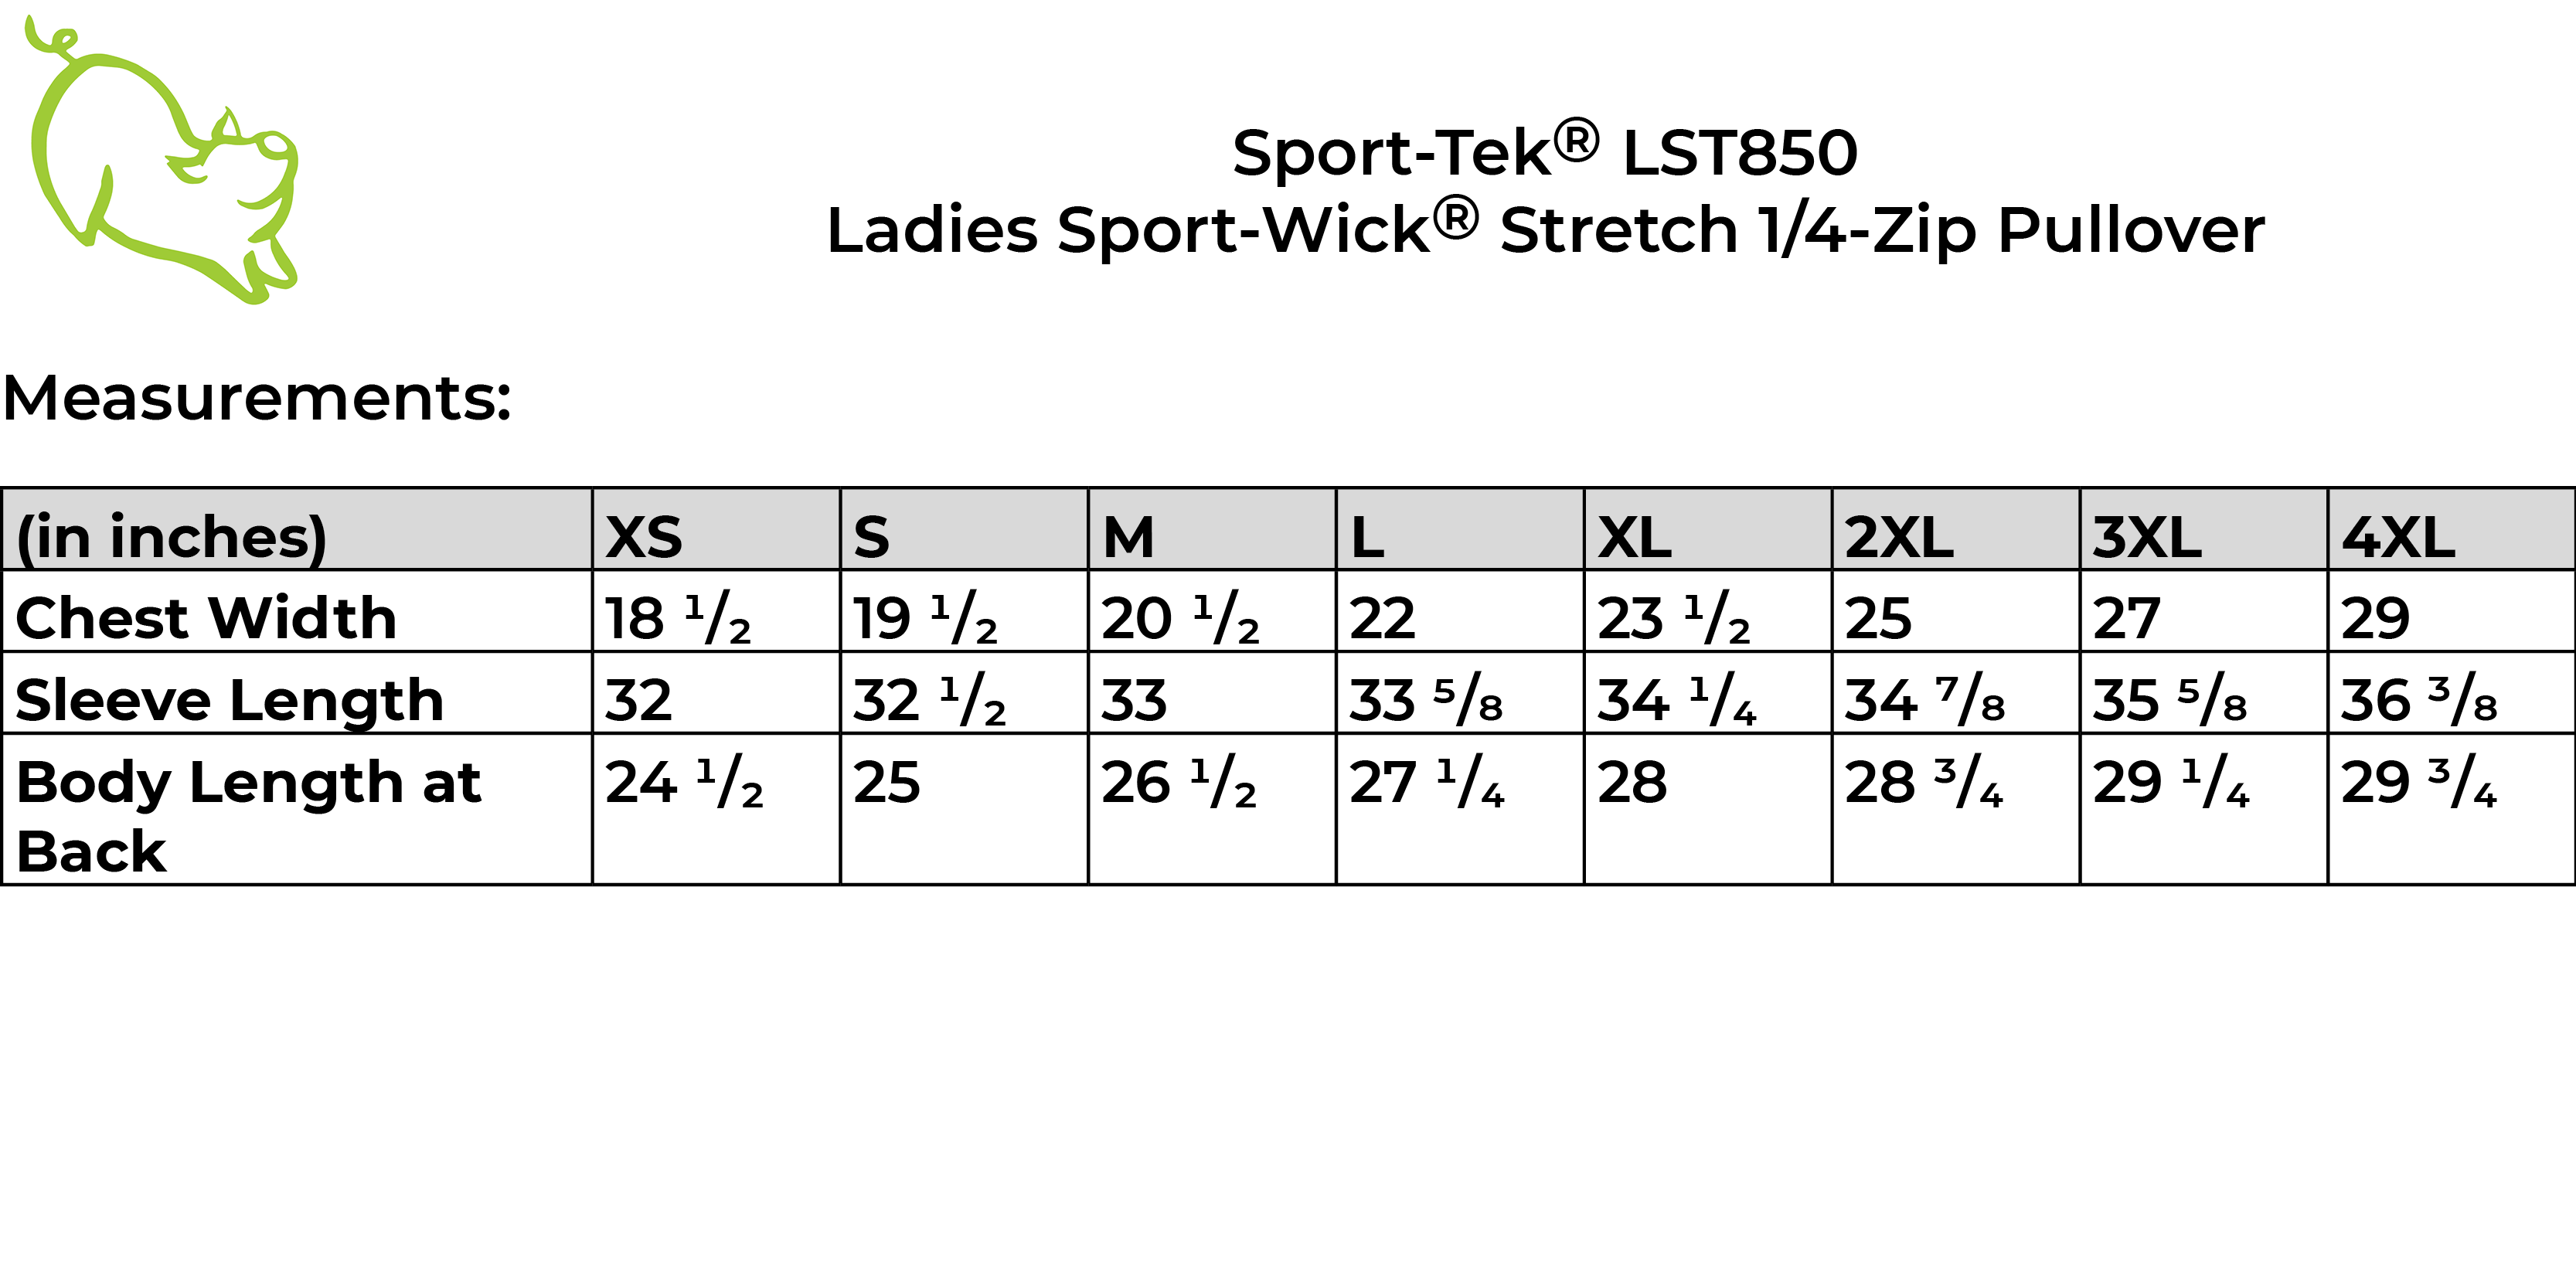 Sport-Tek LST850 size guide